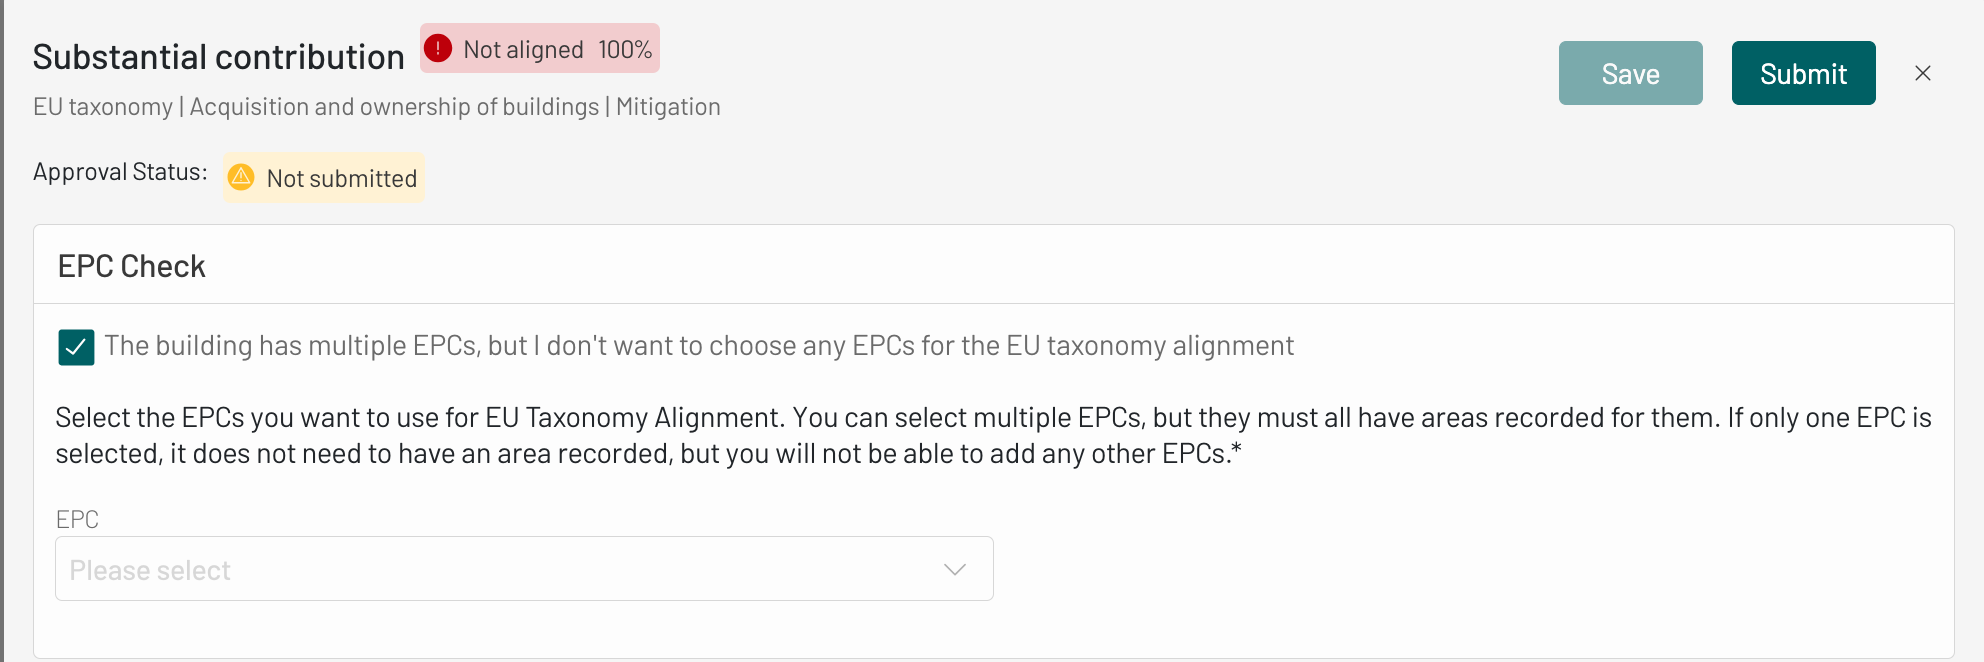 EU Taxonomy Submit Button